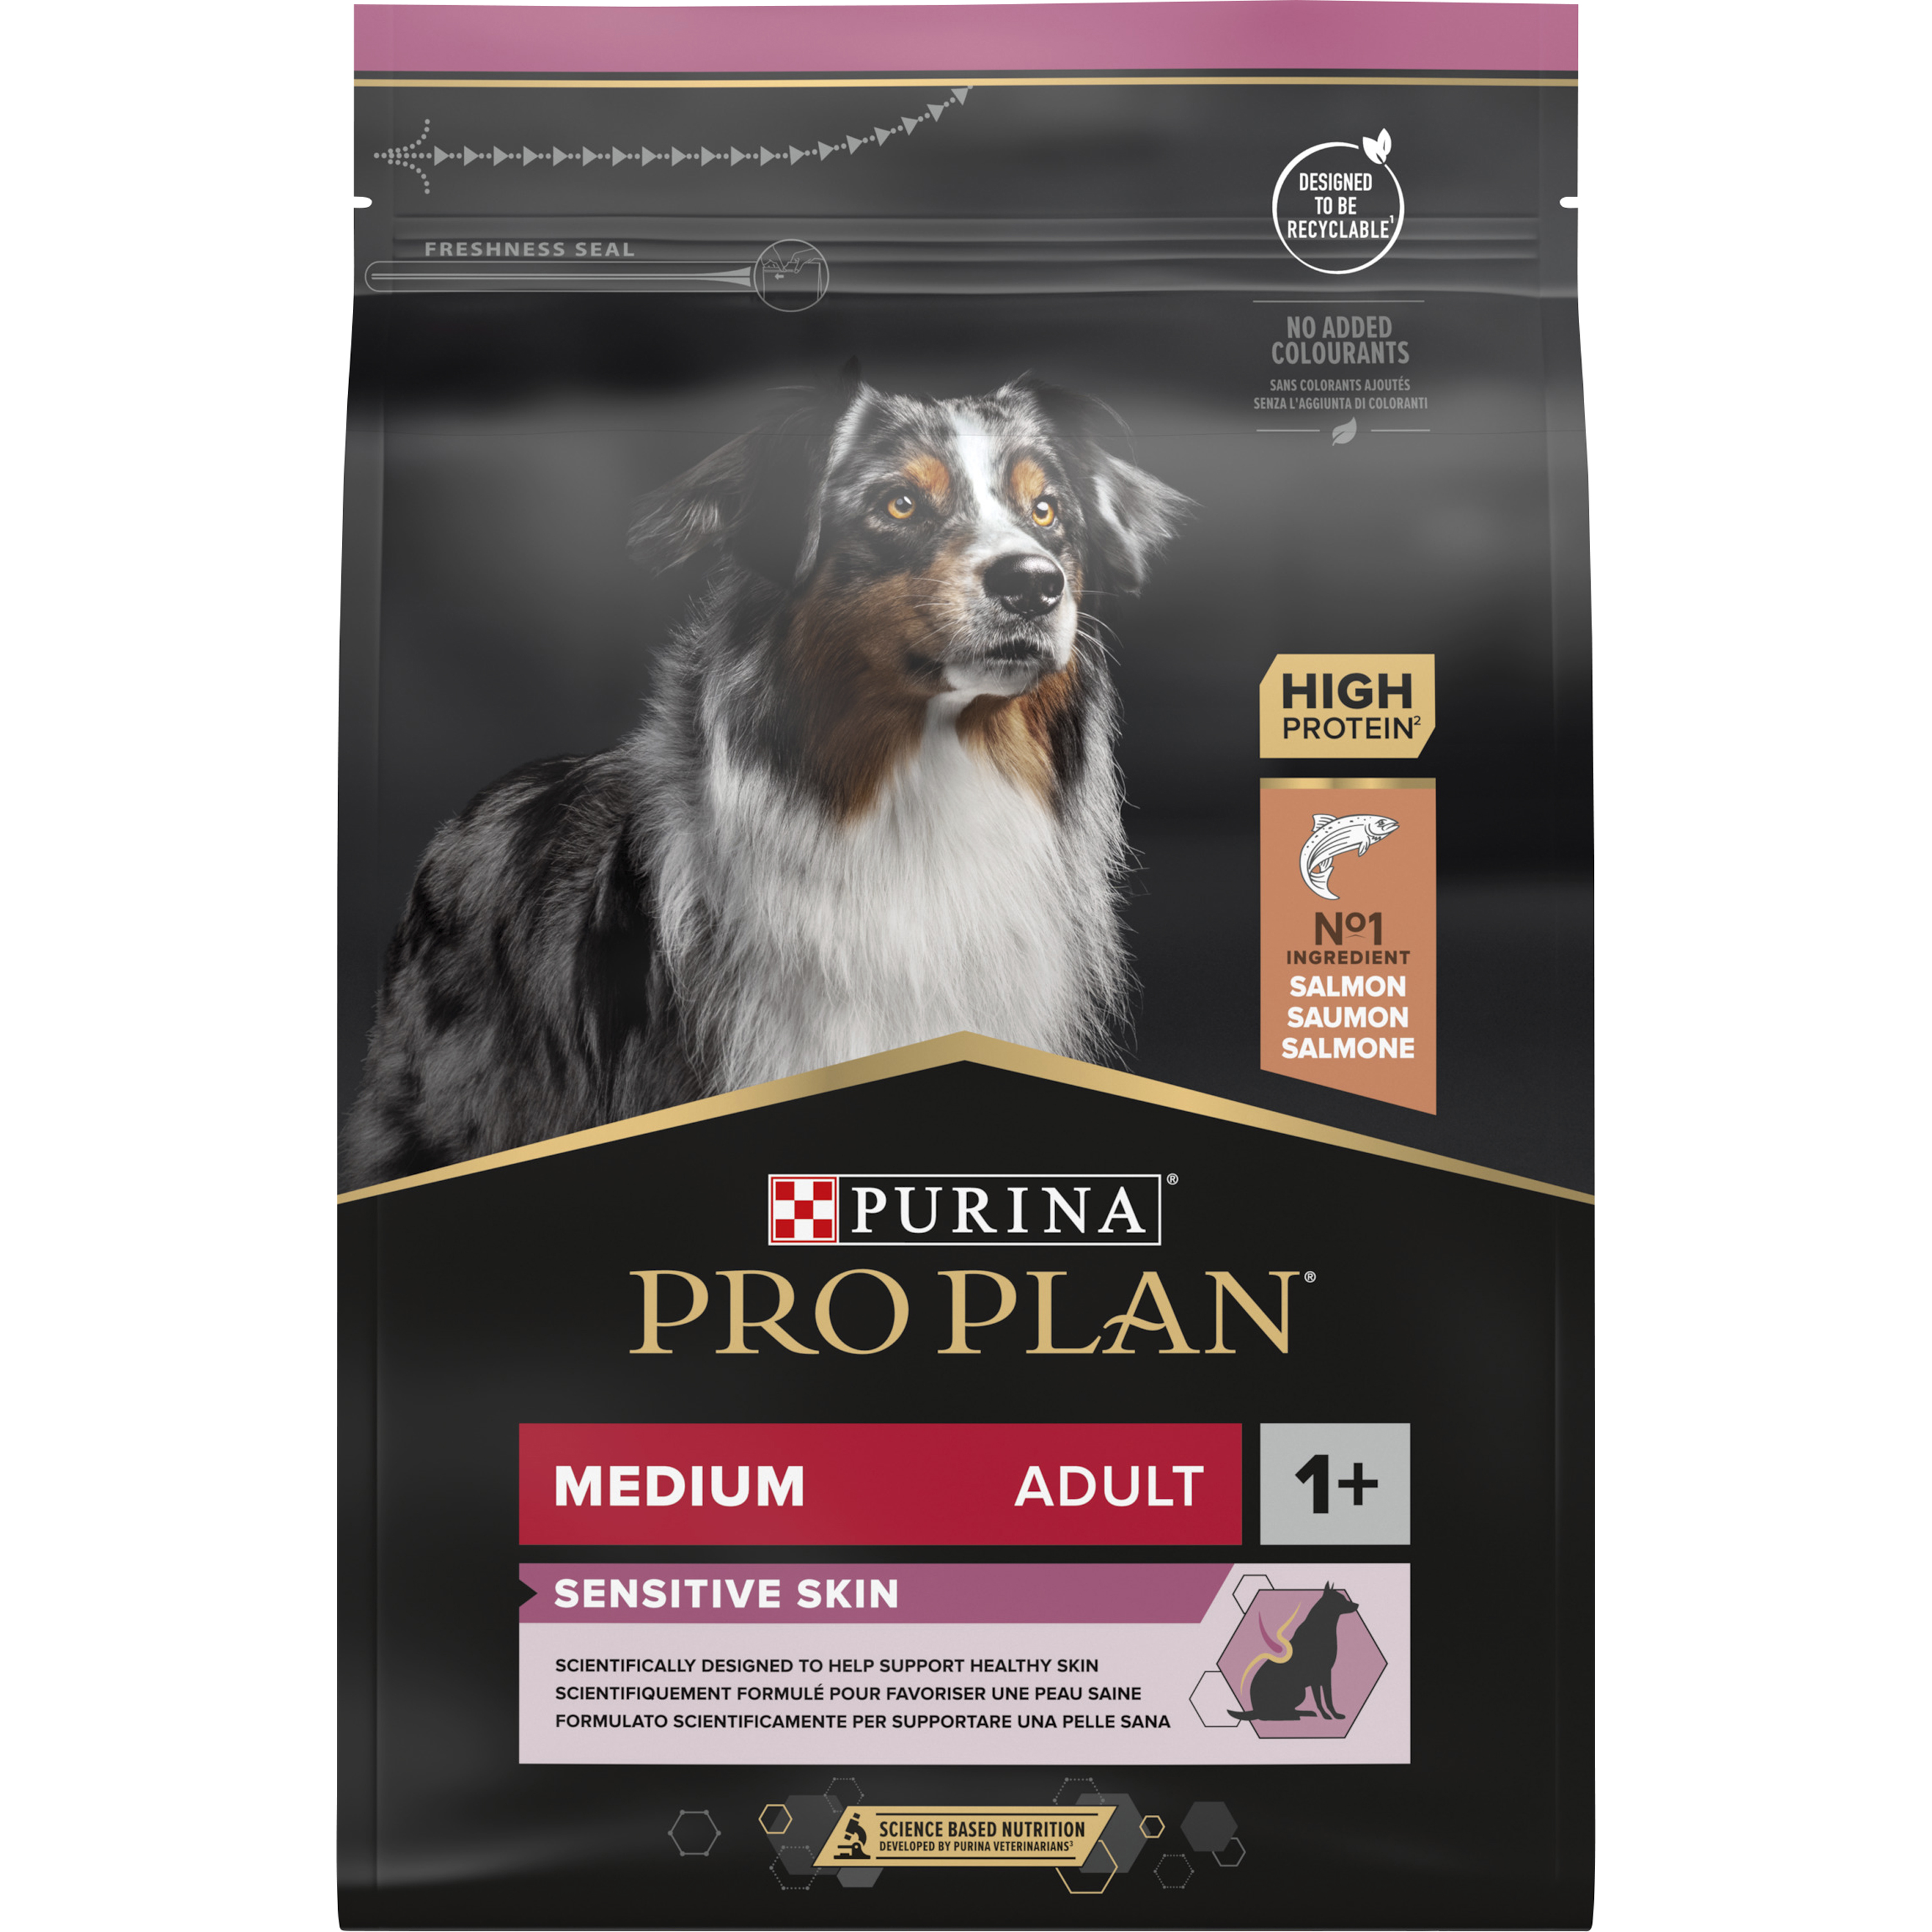 Hundfoder Pro Plan Medium Adult Sensitive Skin 3 kg